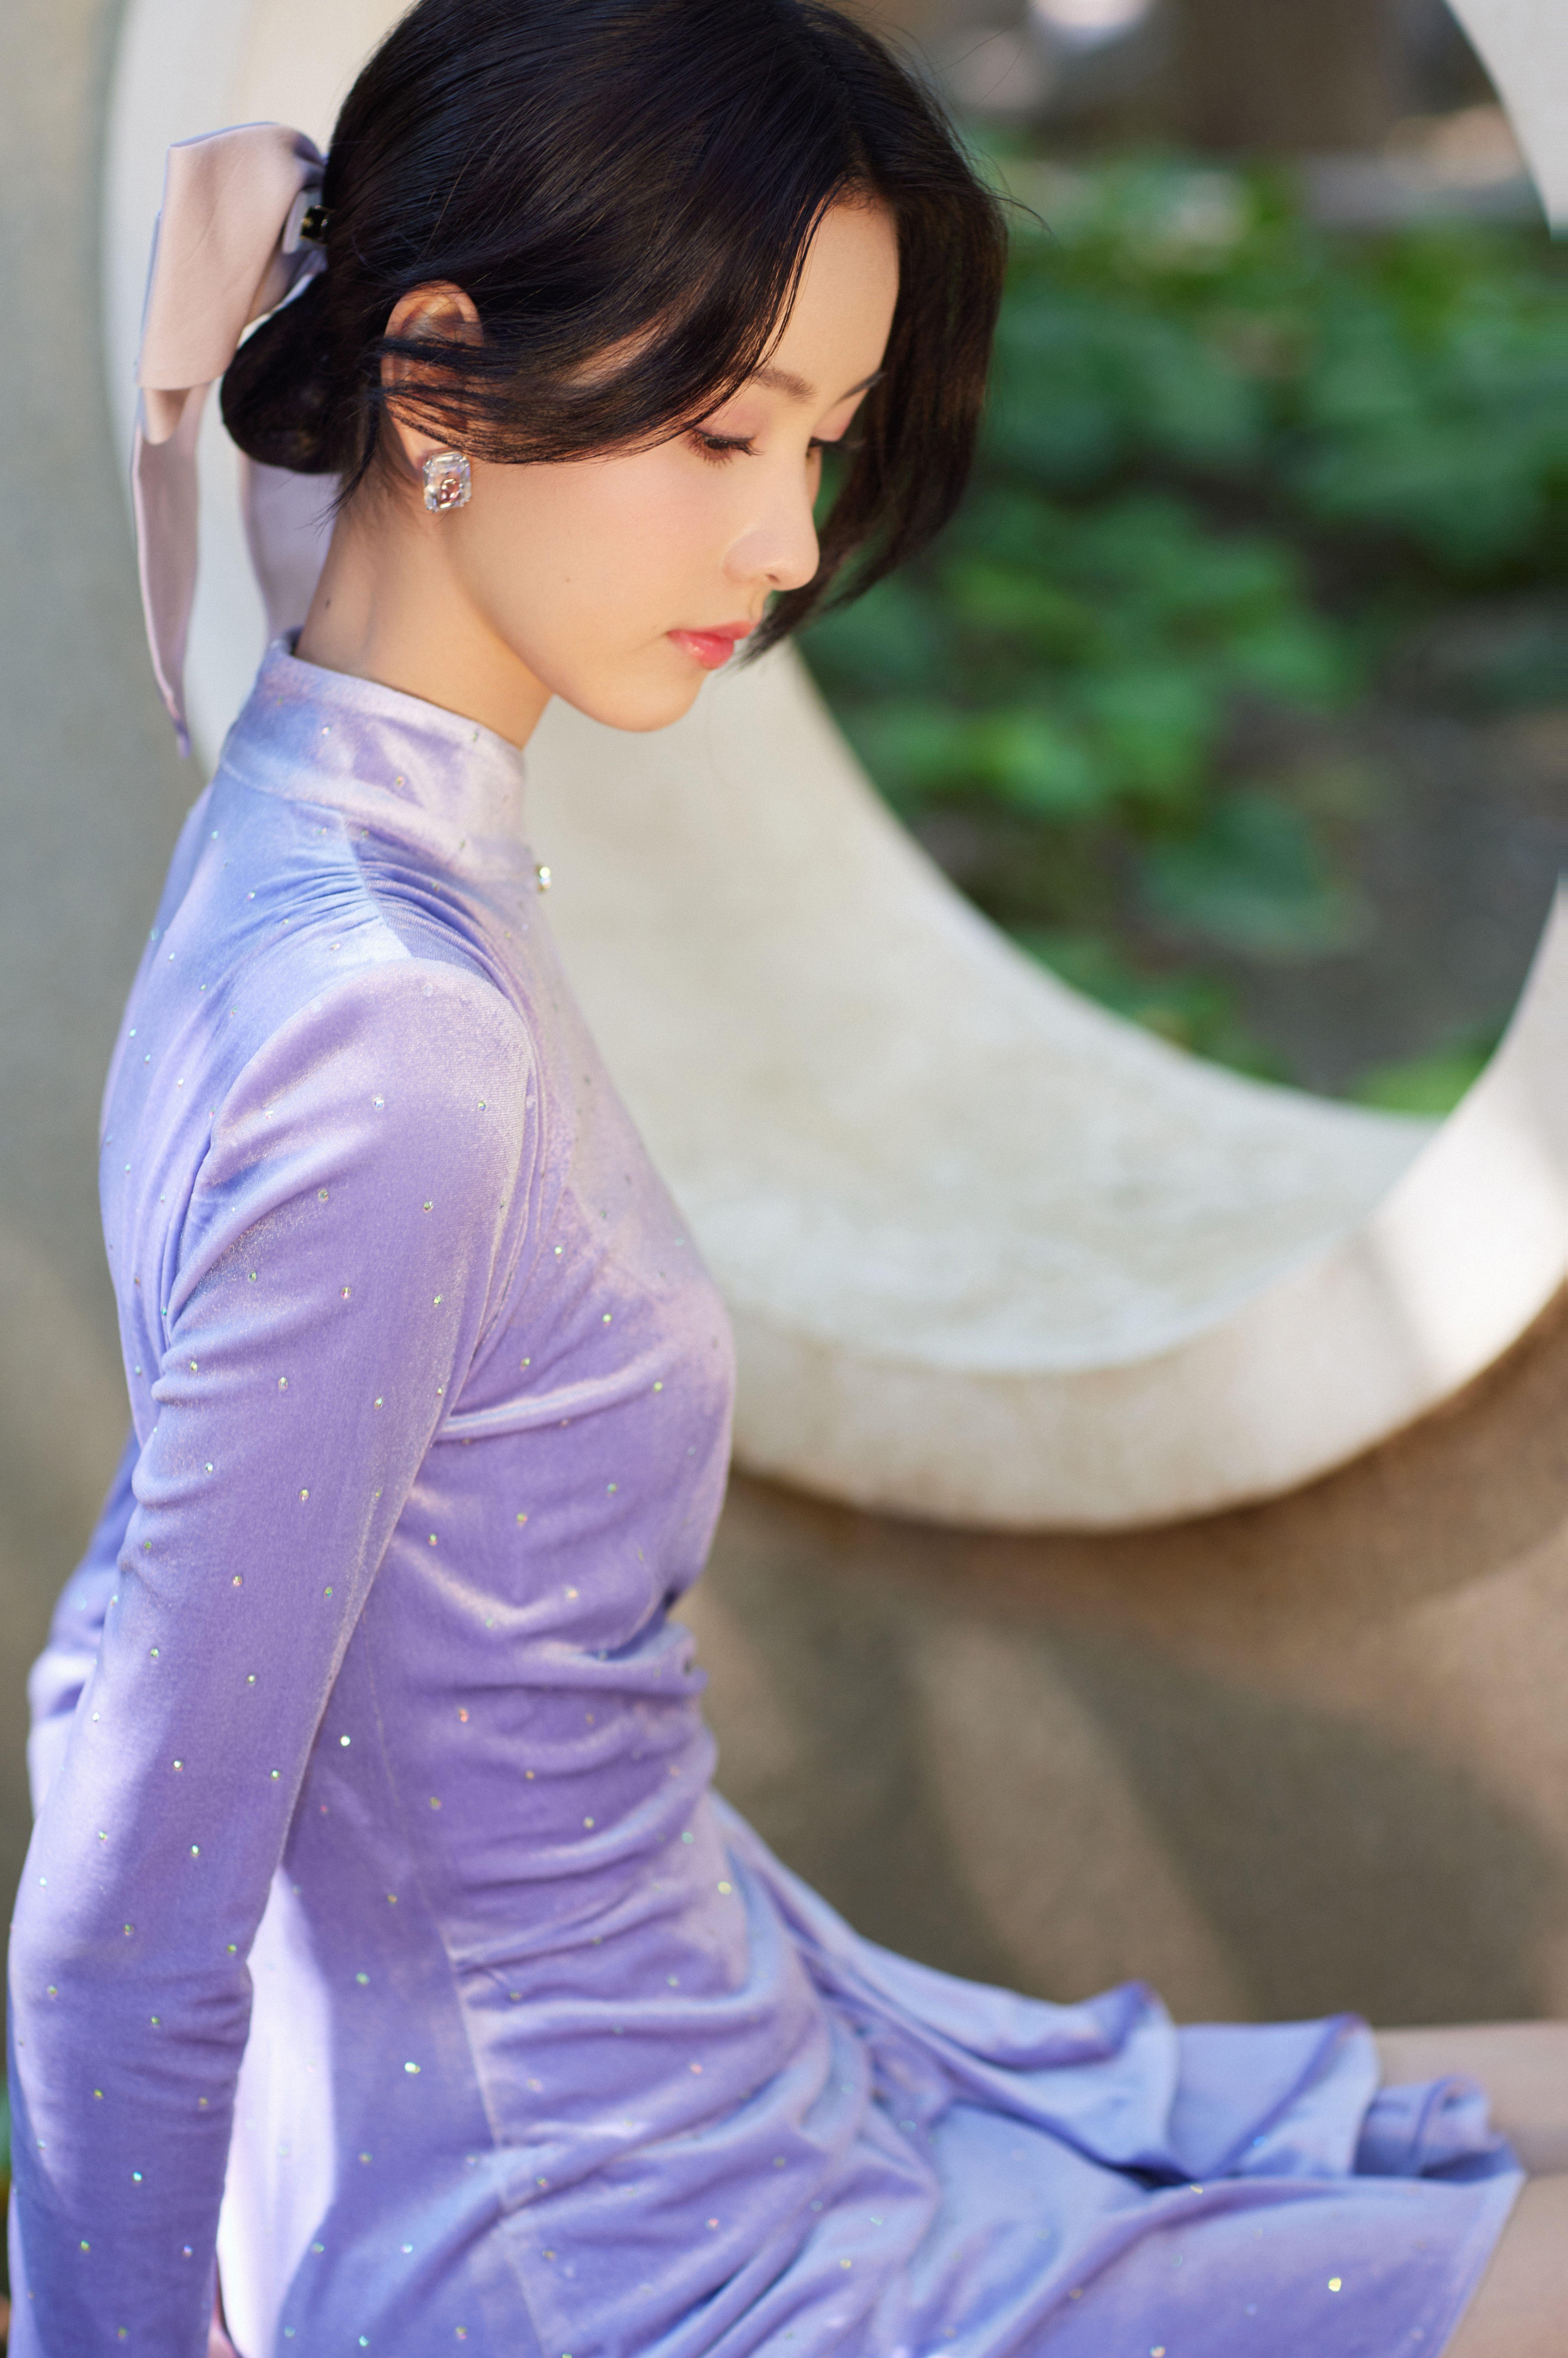 陈都灵低马尾配珍珠耳饰清新优雅 穿紫色丝绒短裙尽显好身材,